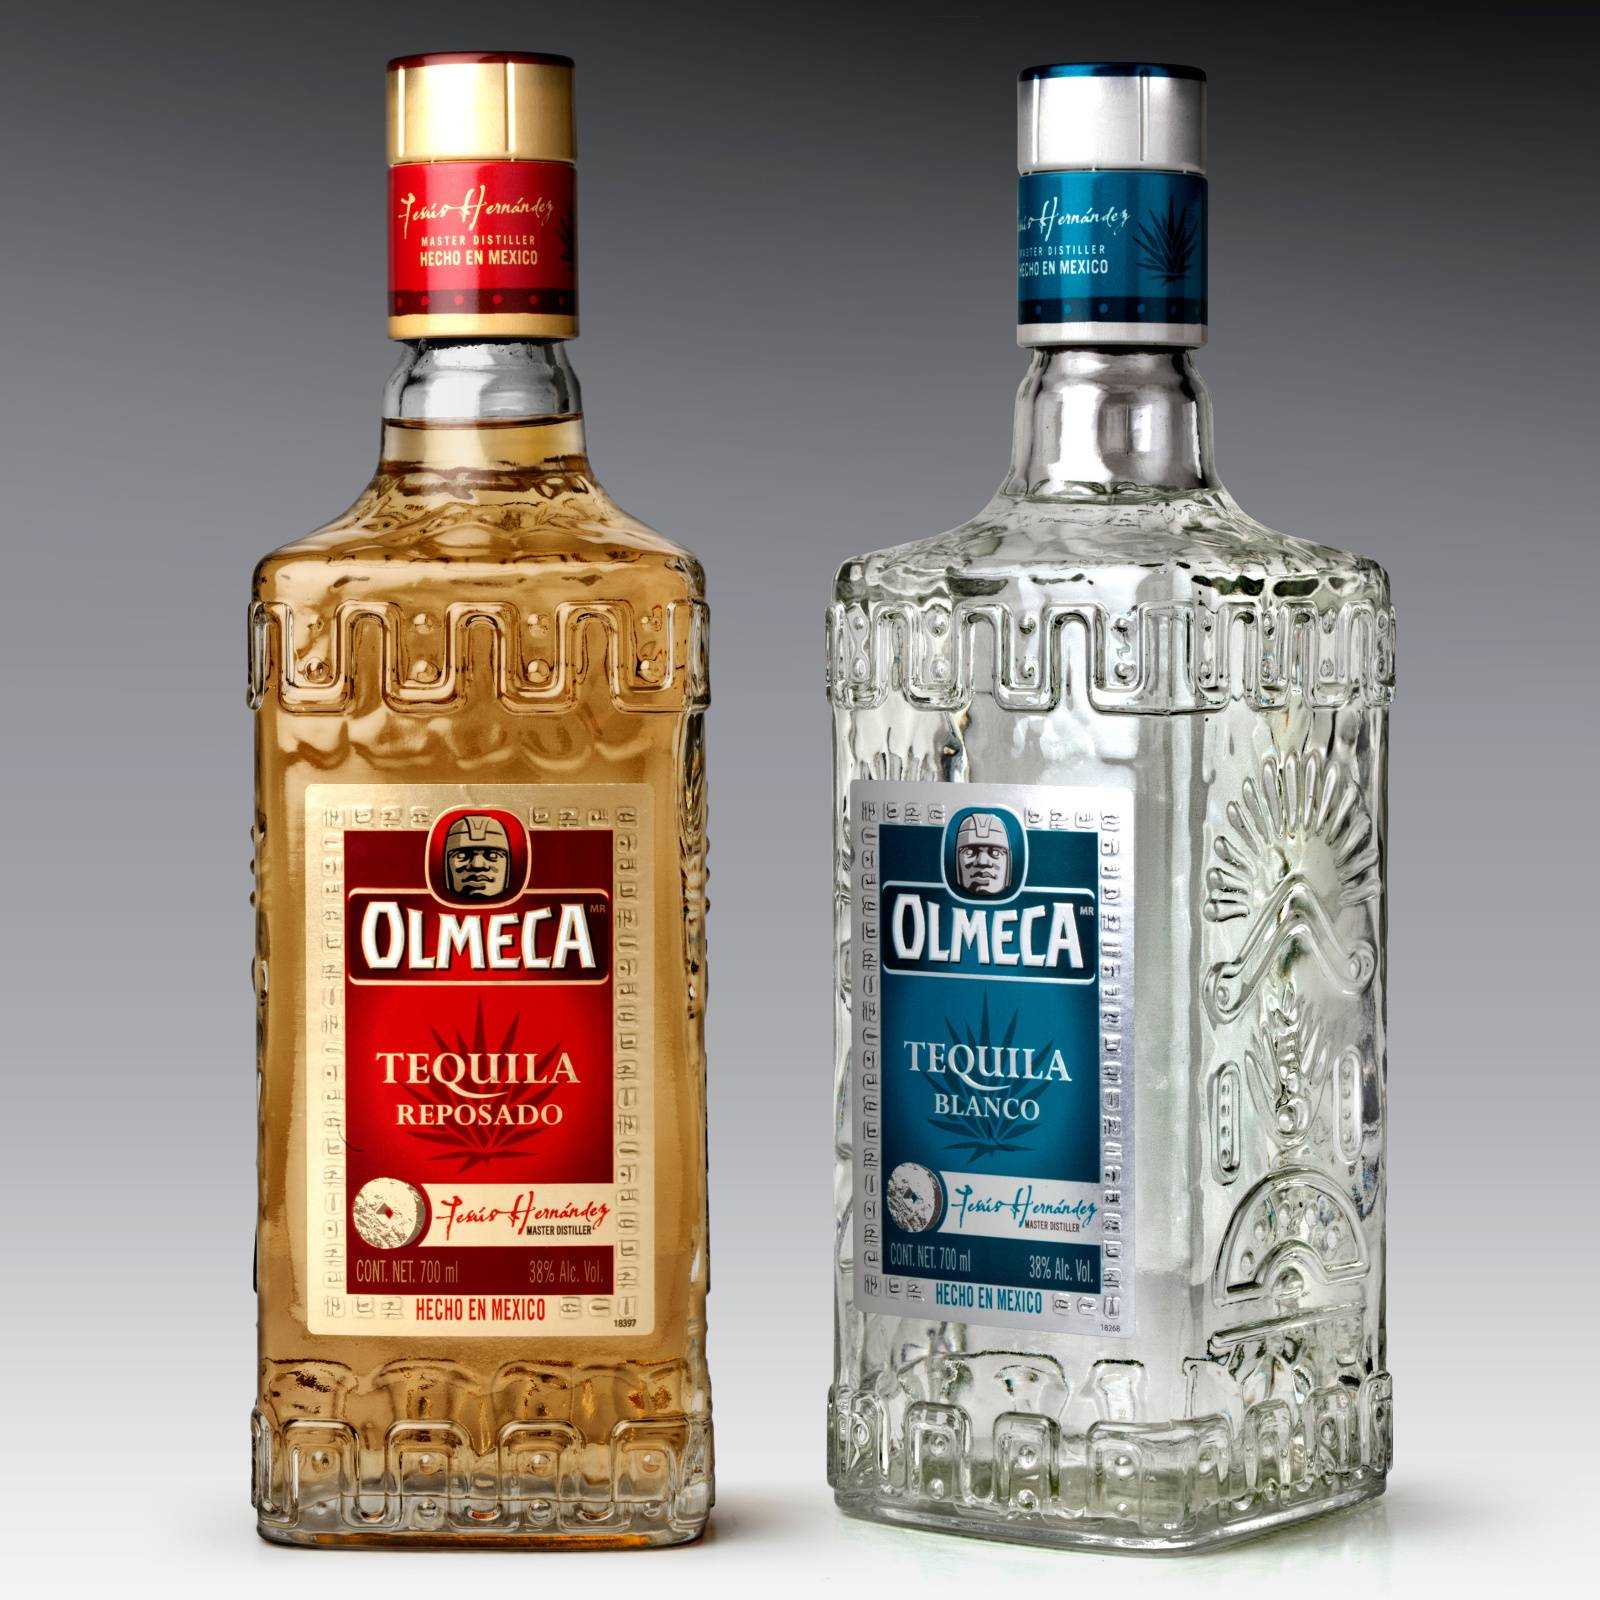 Olmeca как отличить оригинальный напиток от поддельного